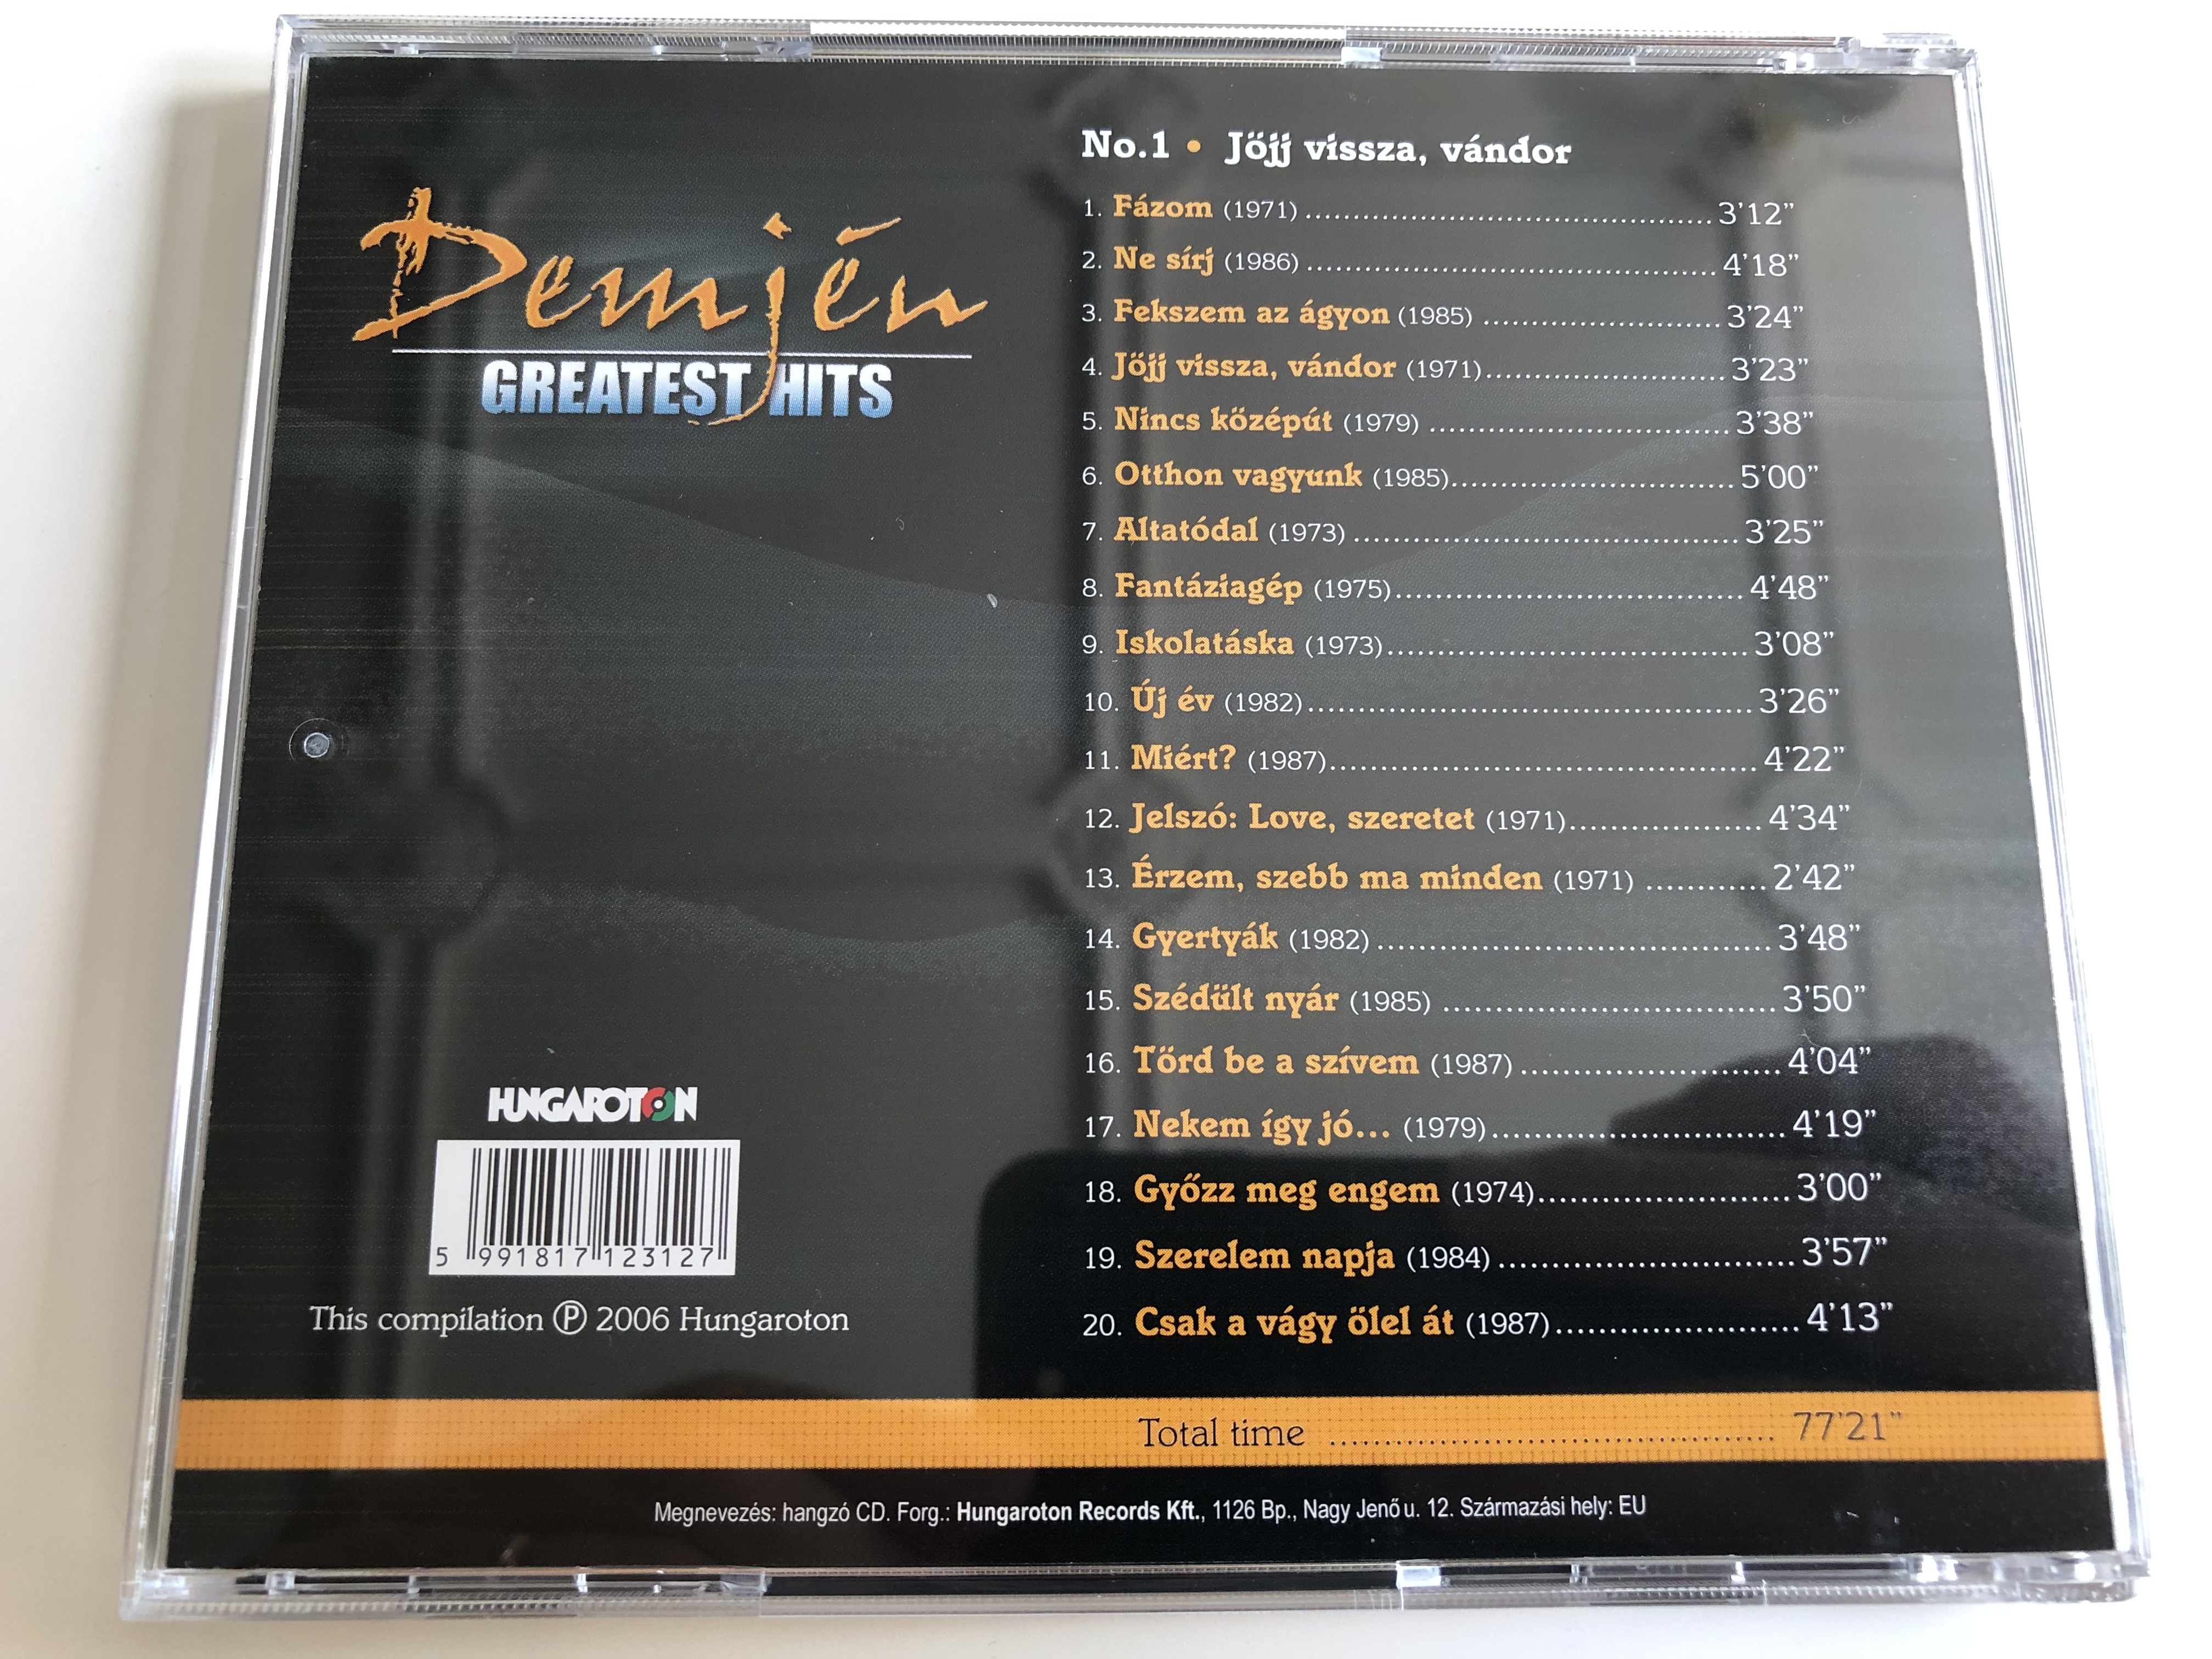 -demj-n-greatest-hits-no.1-j-jj-vissza-v-ndor-hungaroton-audio-cd-2006-hcd-71231-6-.jpg